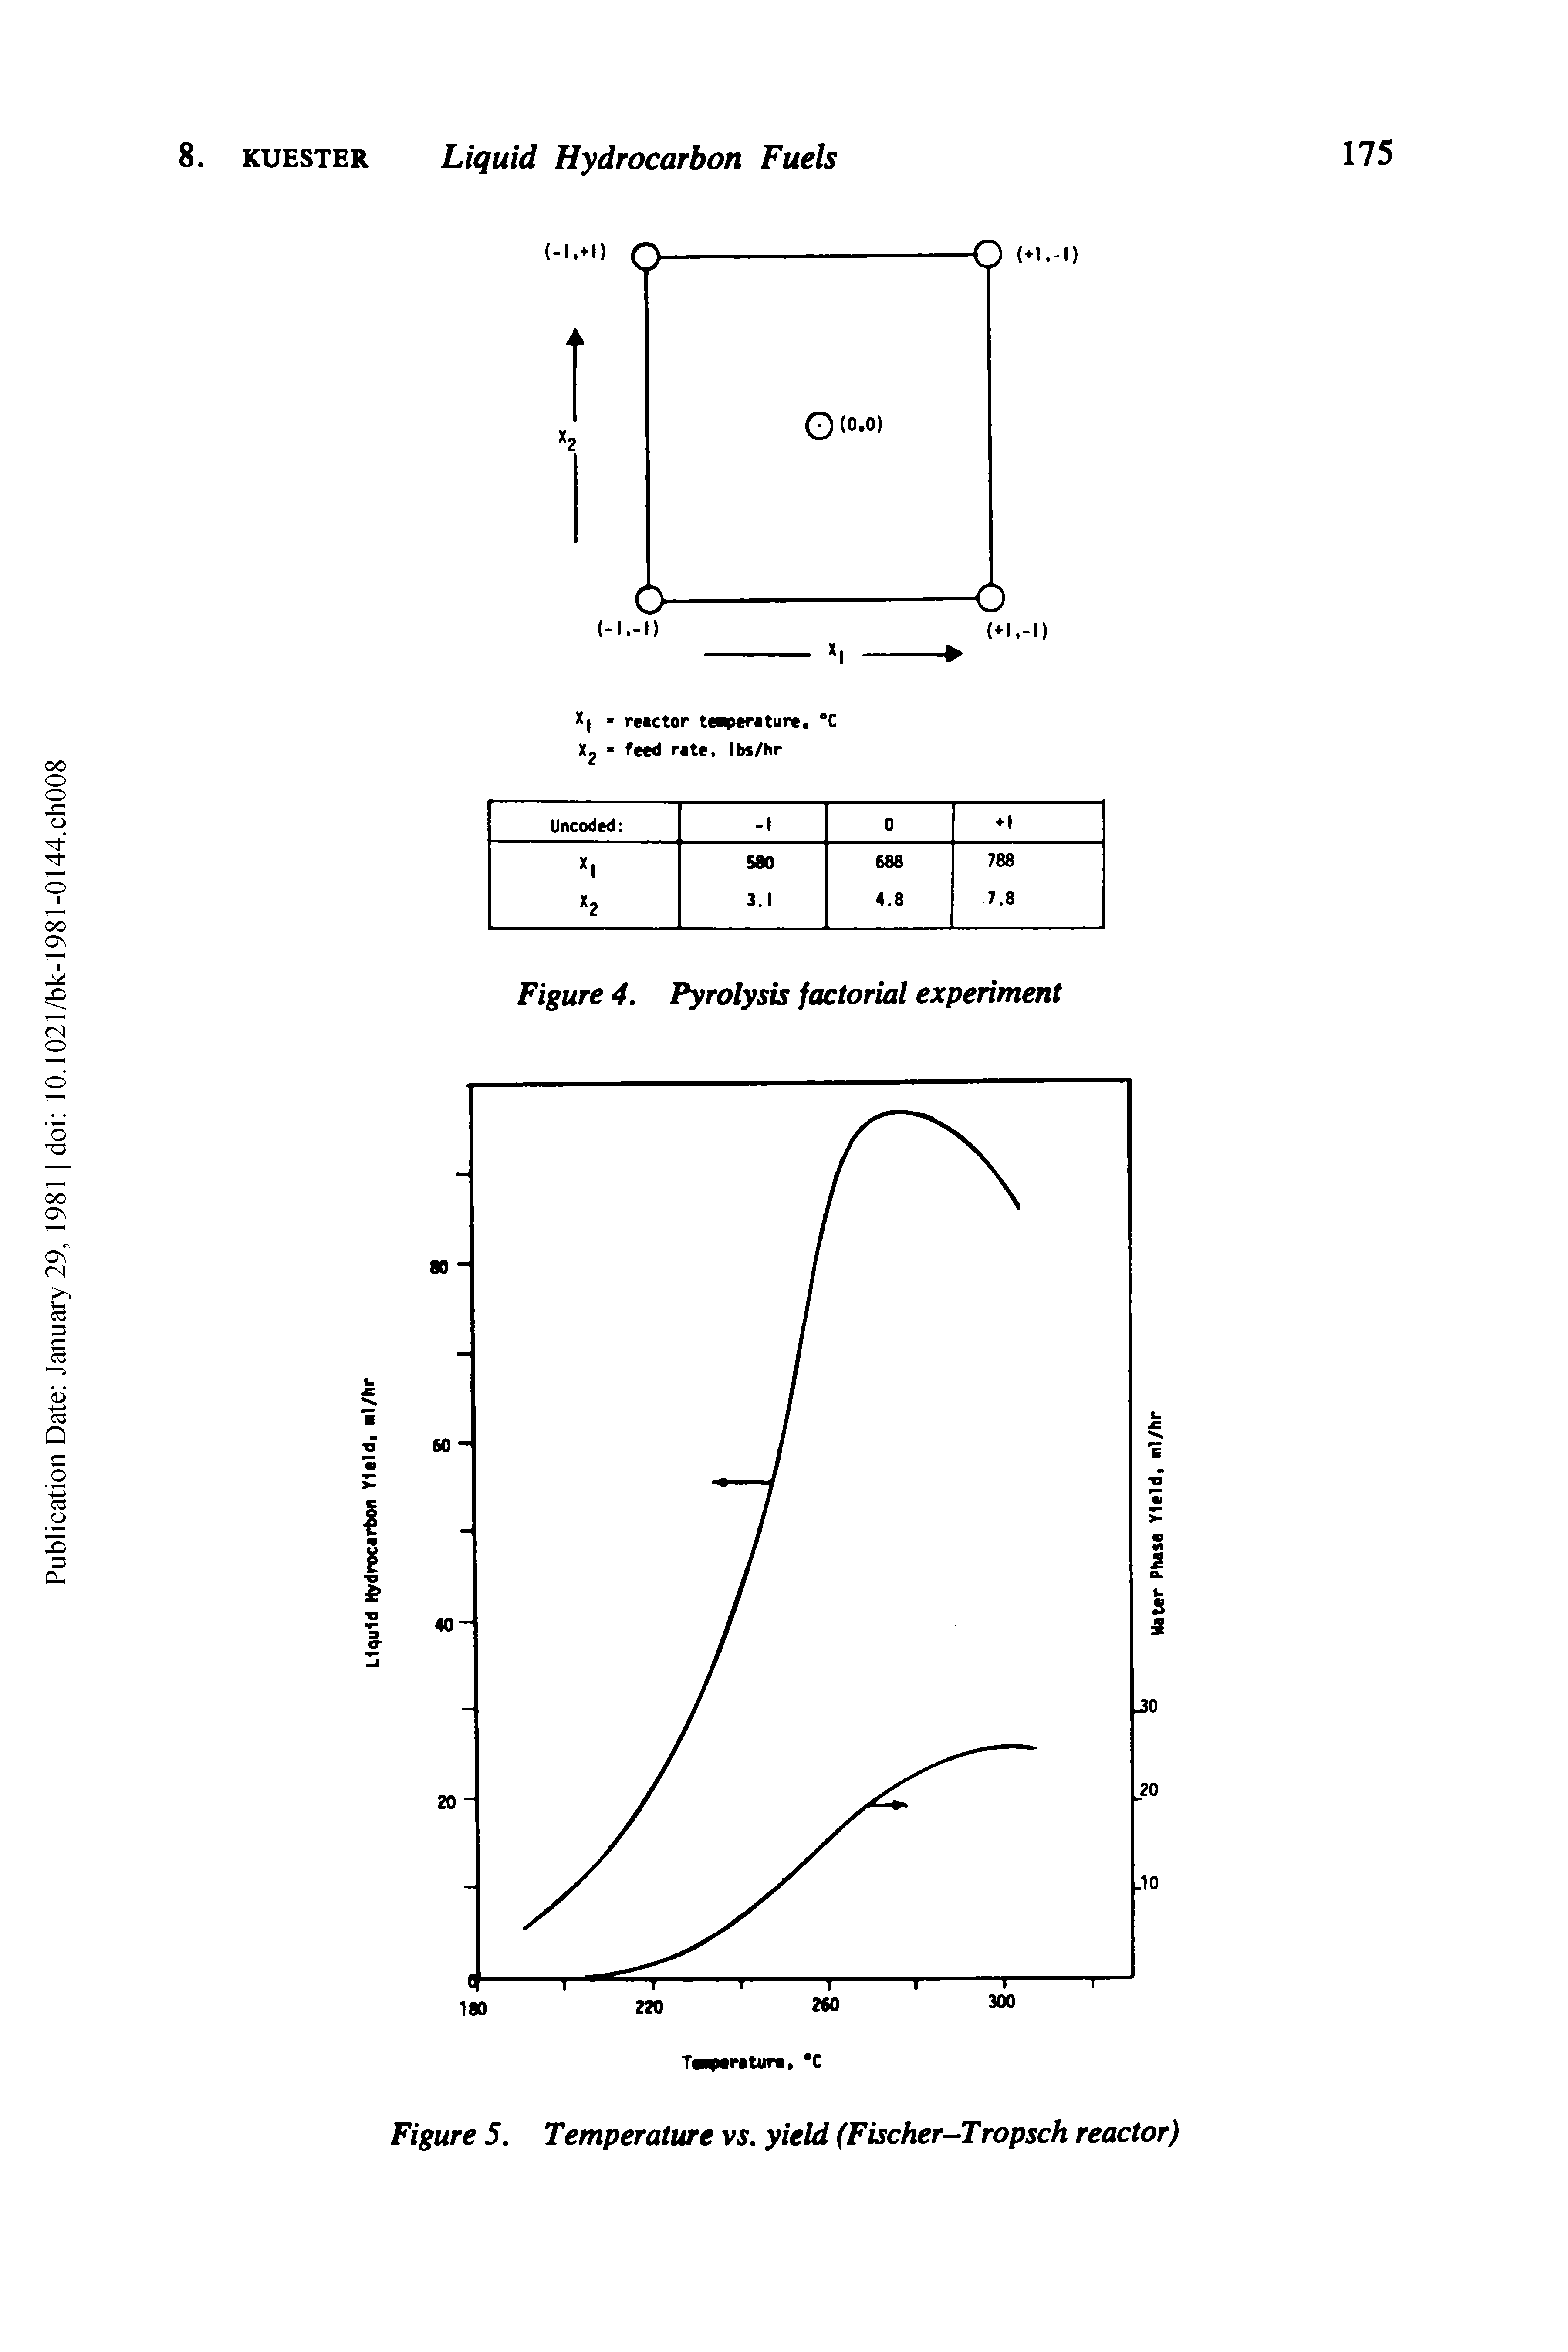 Figure 5. Temperature vs. yield (Fischer-Tropsch reactor)...